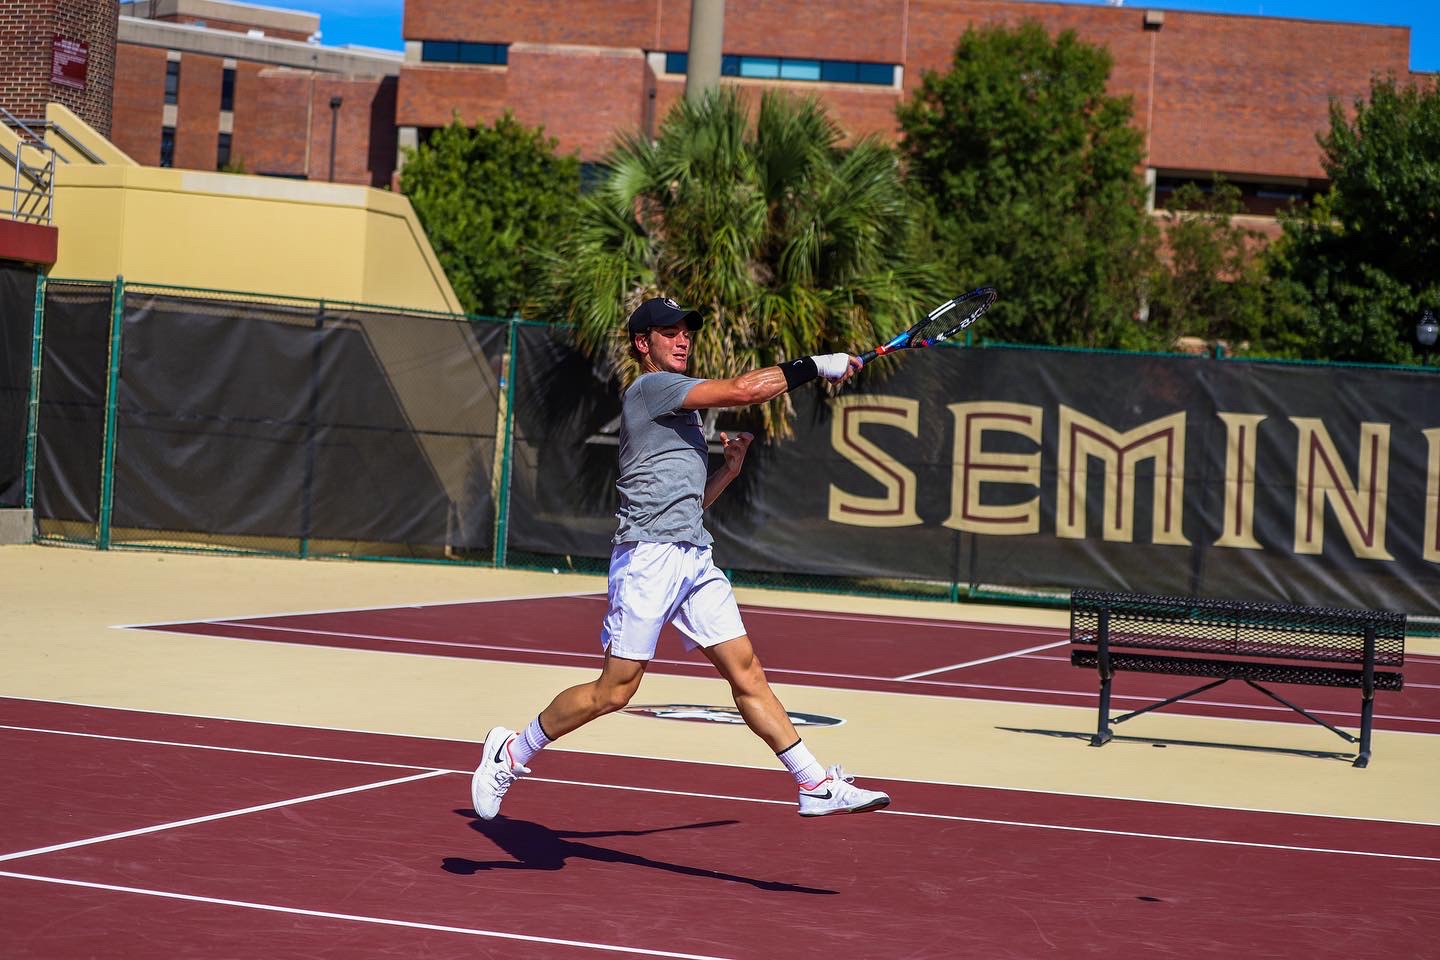 Sebastian A. teaches tennis lessons in Tallahassee, FL